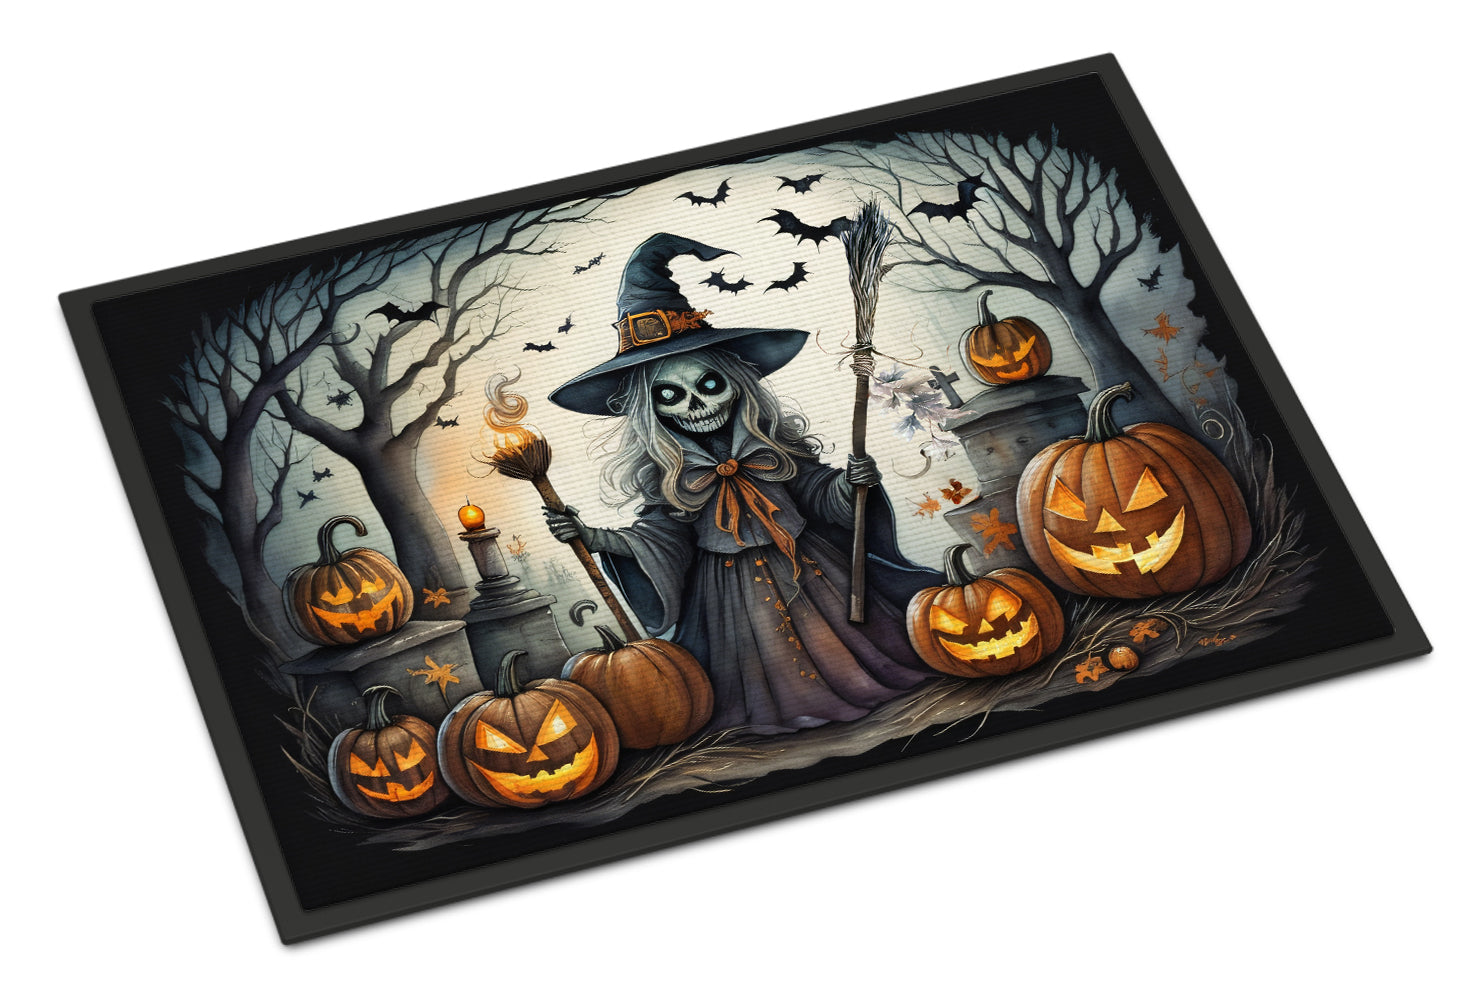 Buy this Witch Spooky Halloween Doormat 18x27